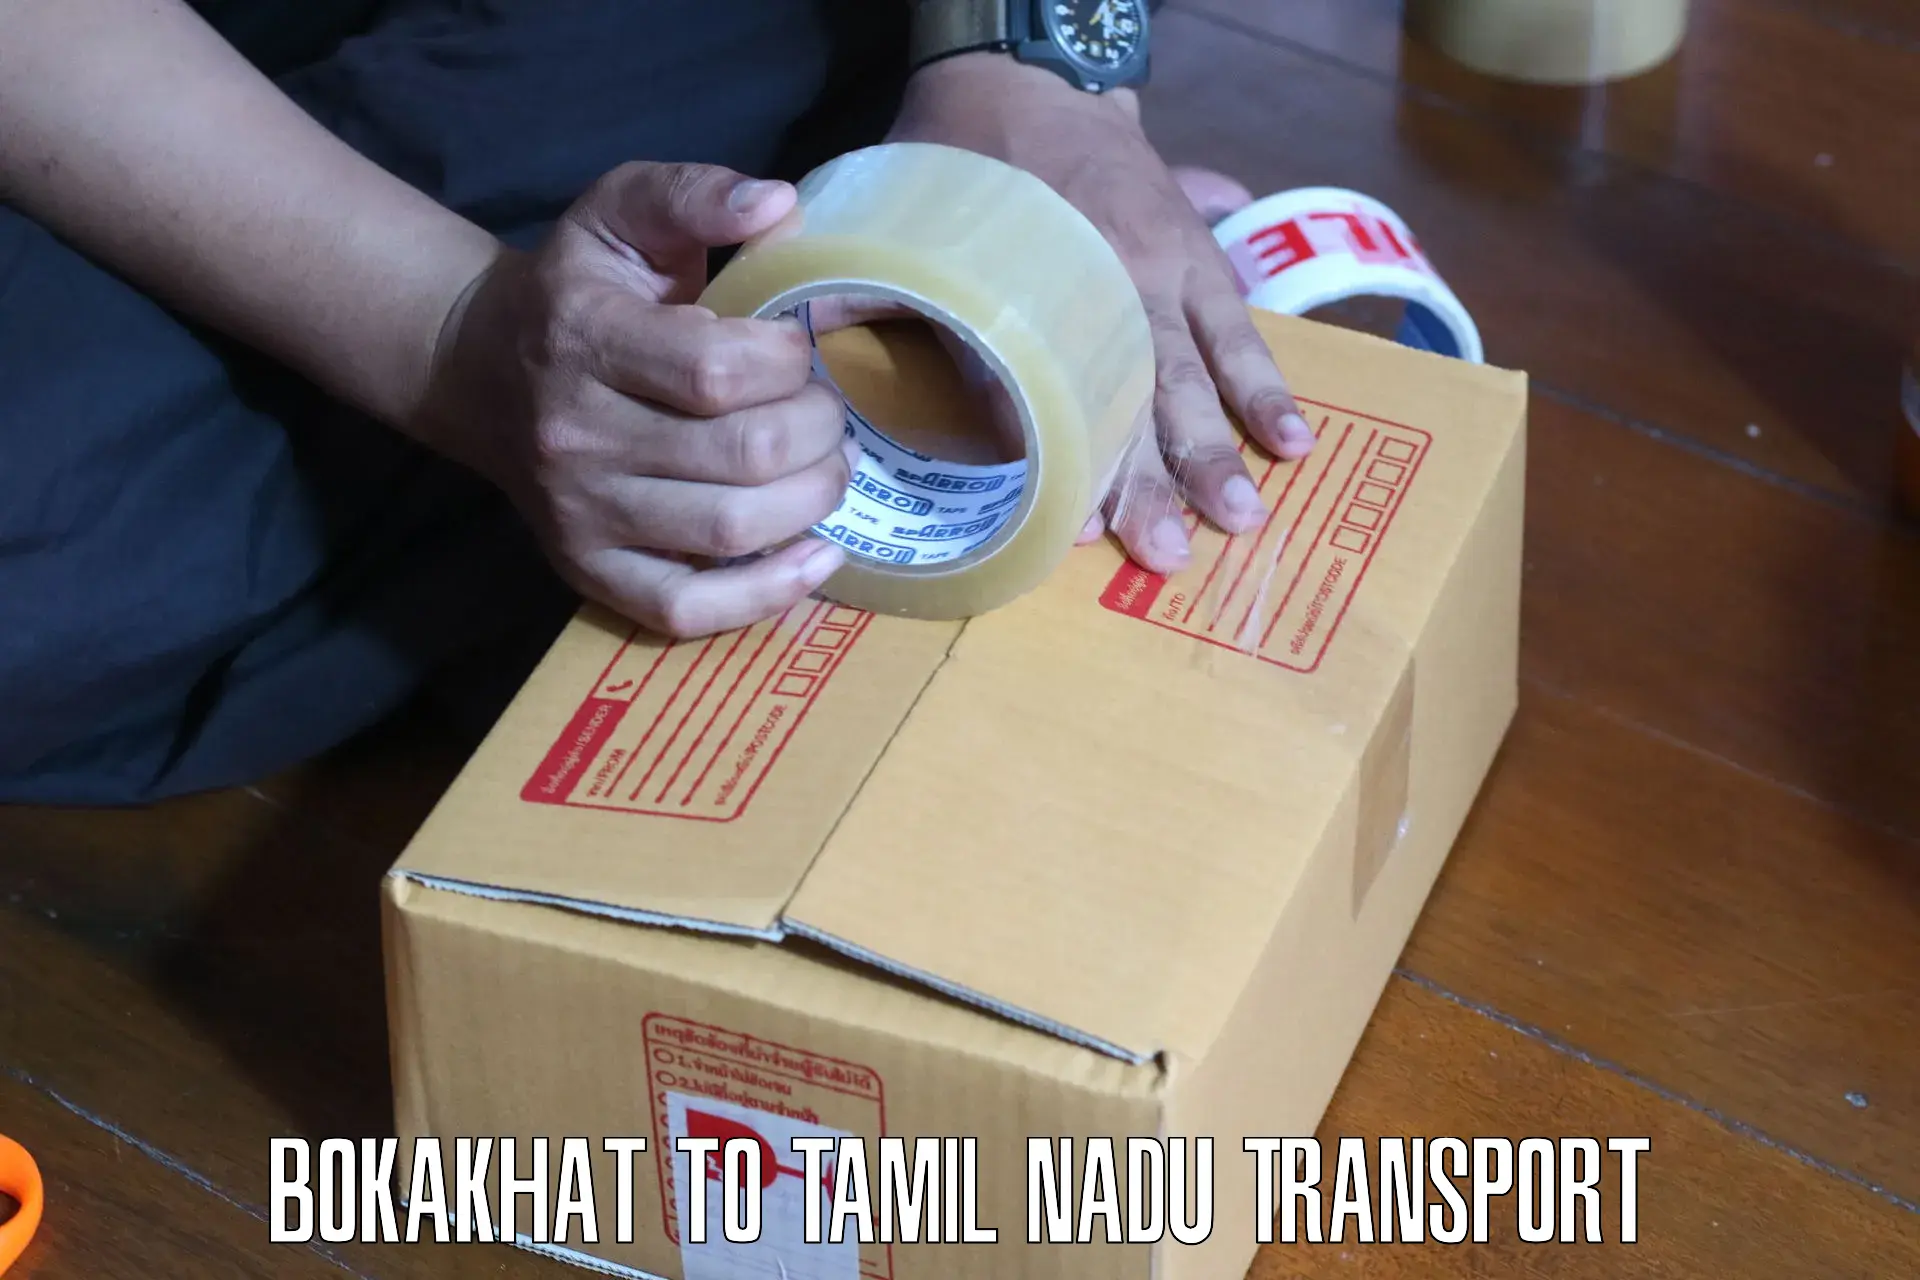 Furniture transport service Bokakhat to Mayiladuthurai